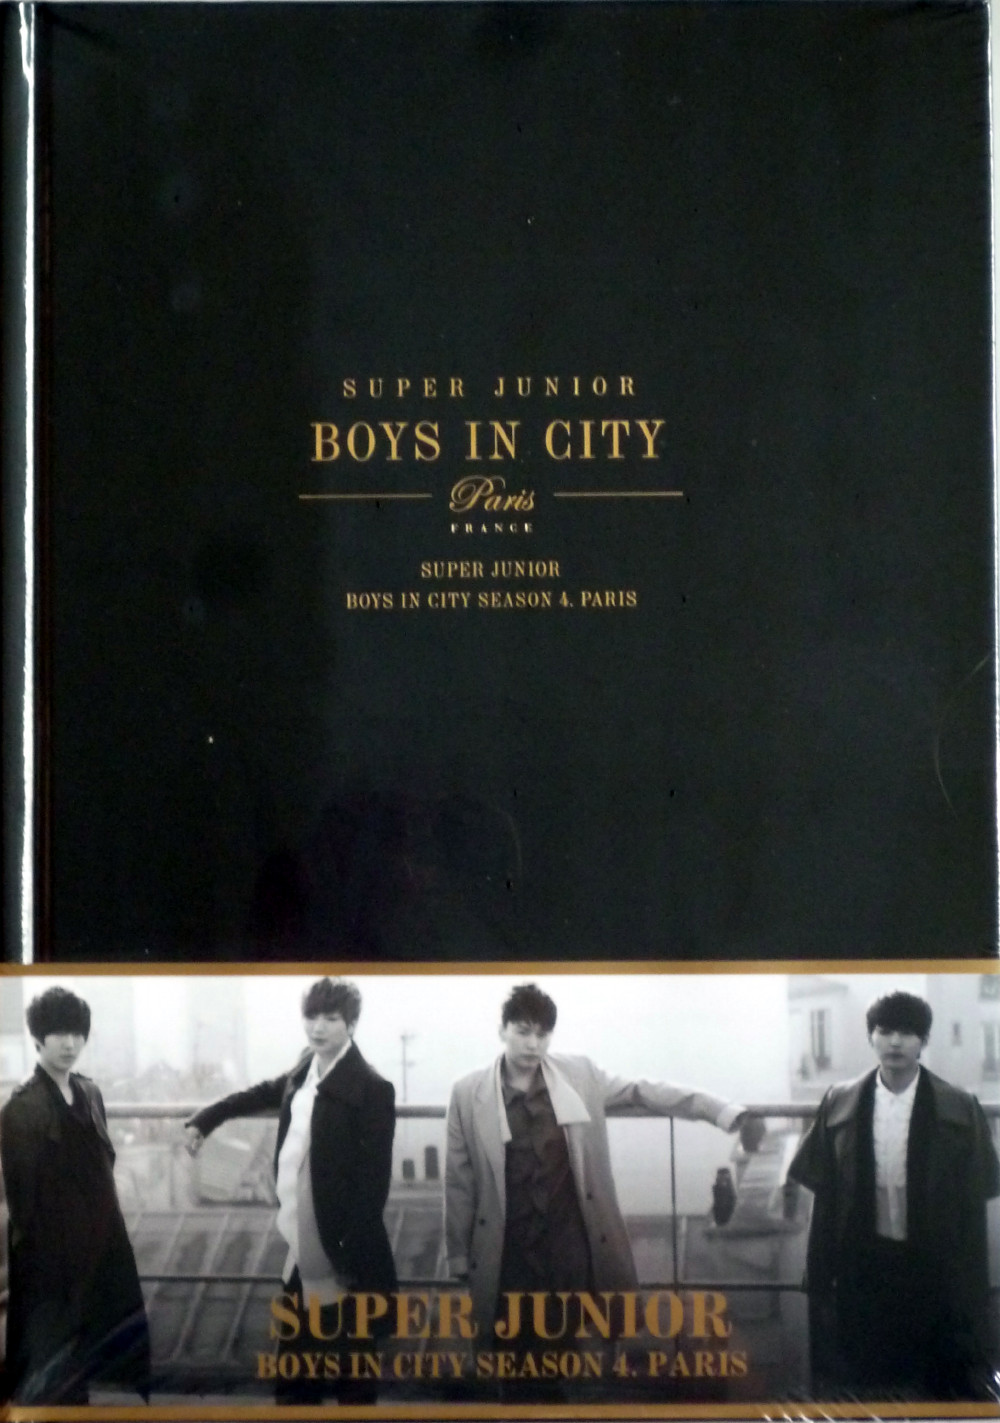 Super Junior- Super Junior Boys in City Season 4. Paris